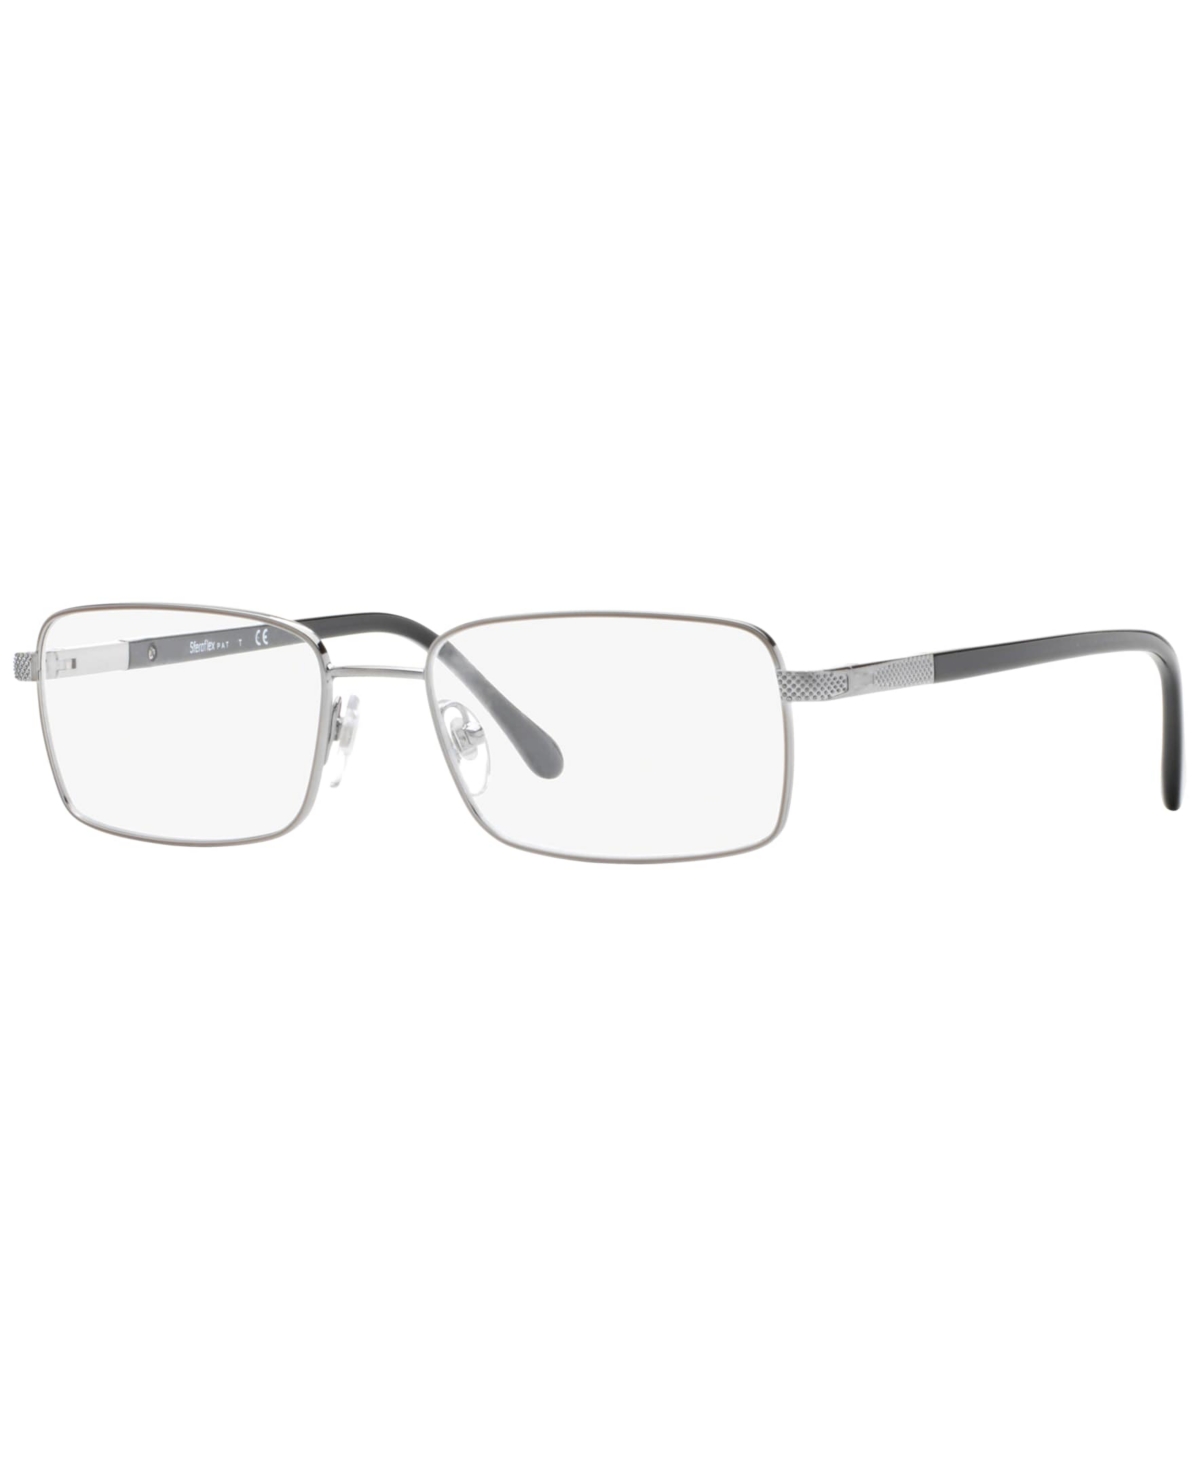 Steroflex Men's Eyeglasses, SF2265 - Matte Black